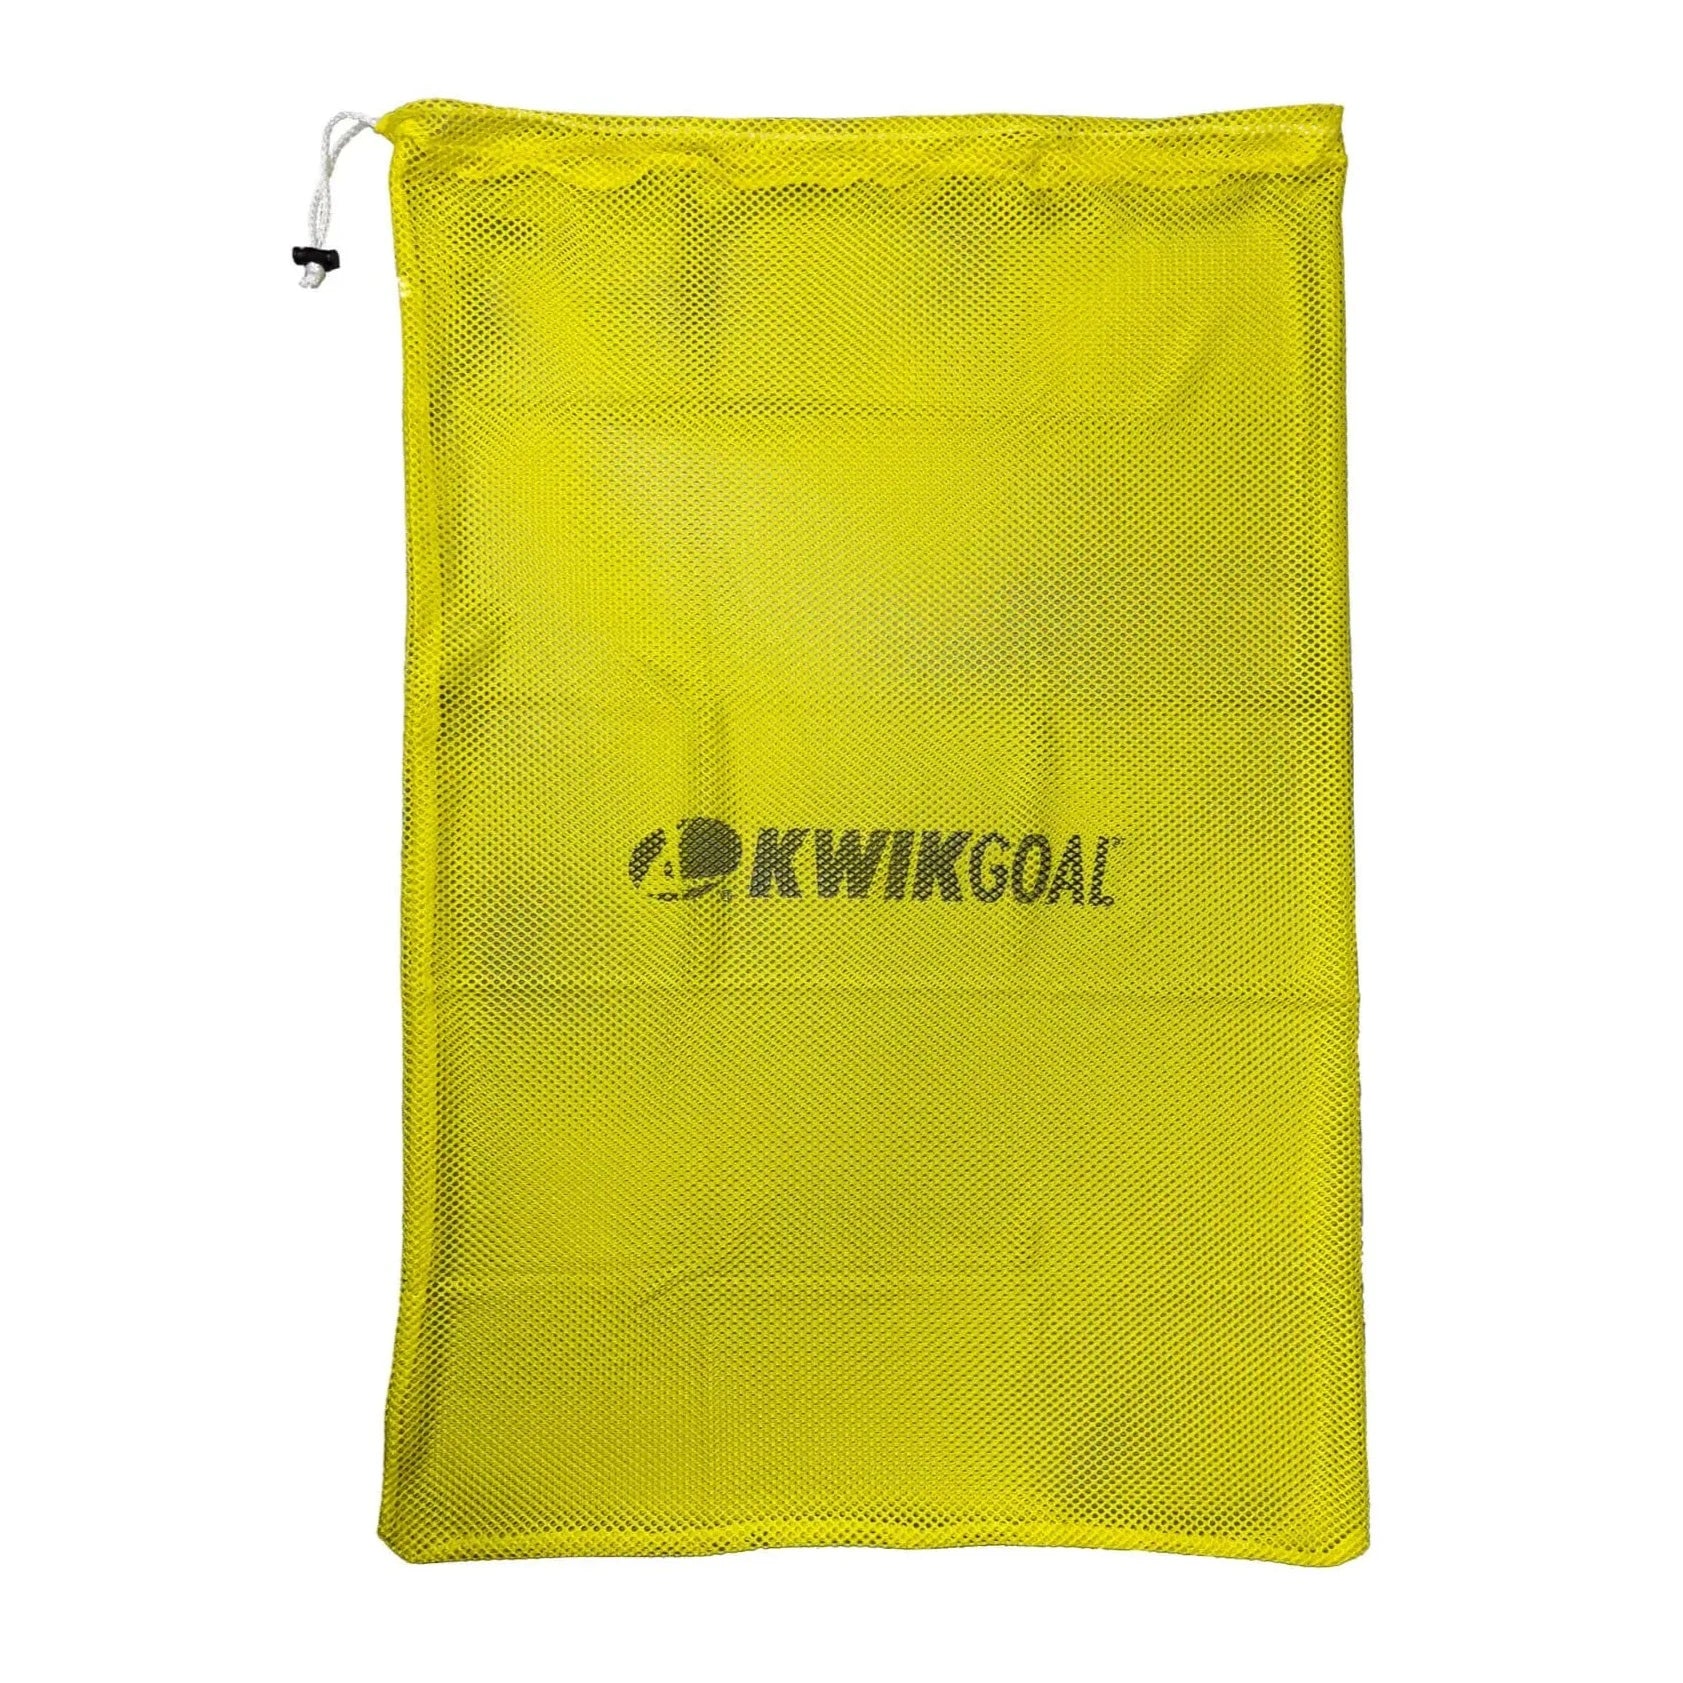 Kwikgoal Equipment Bag Yellow